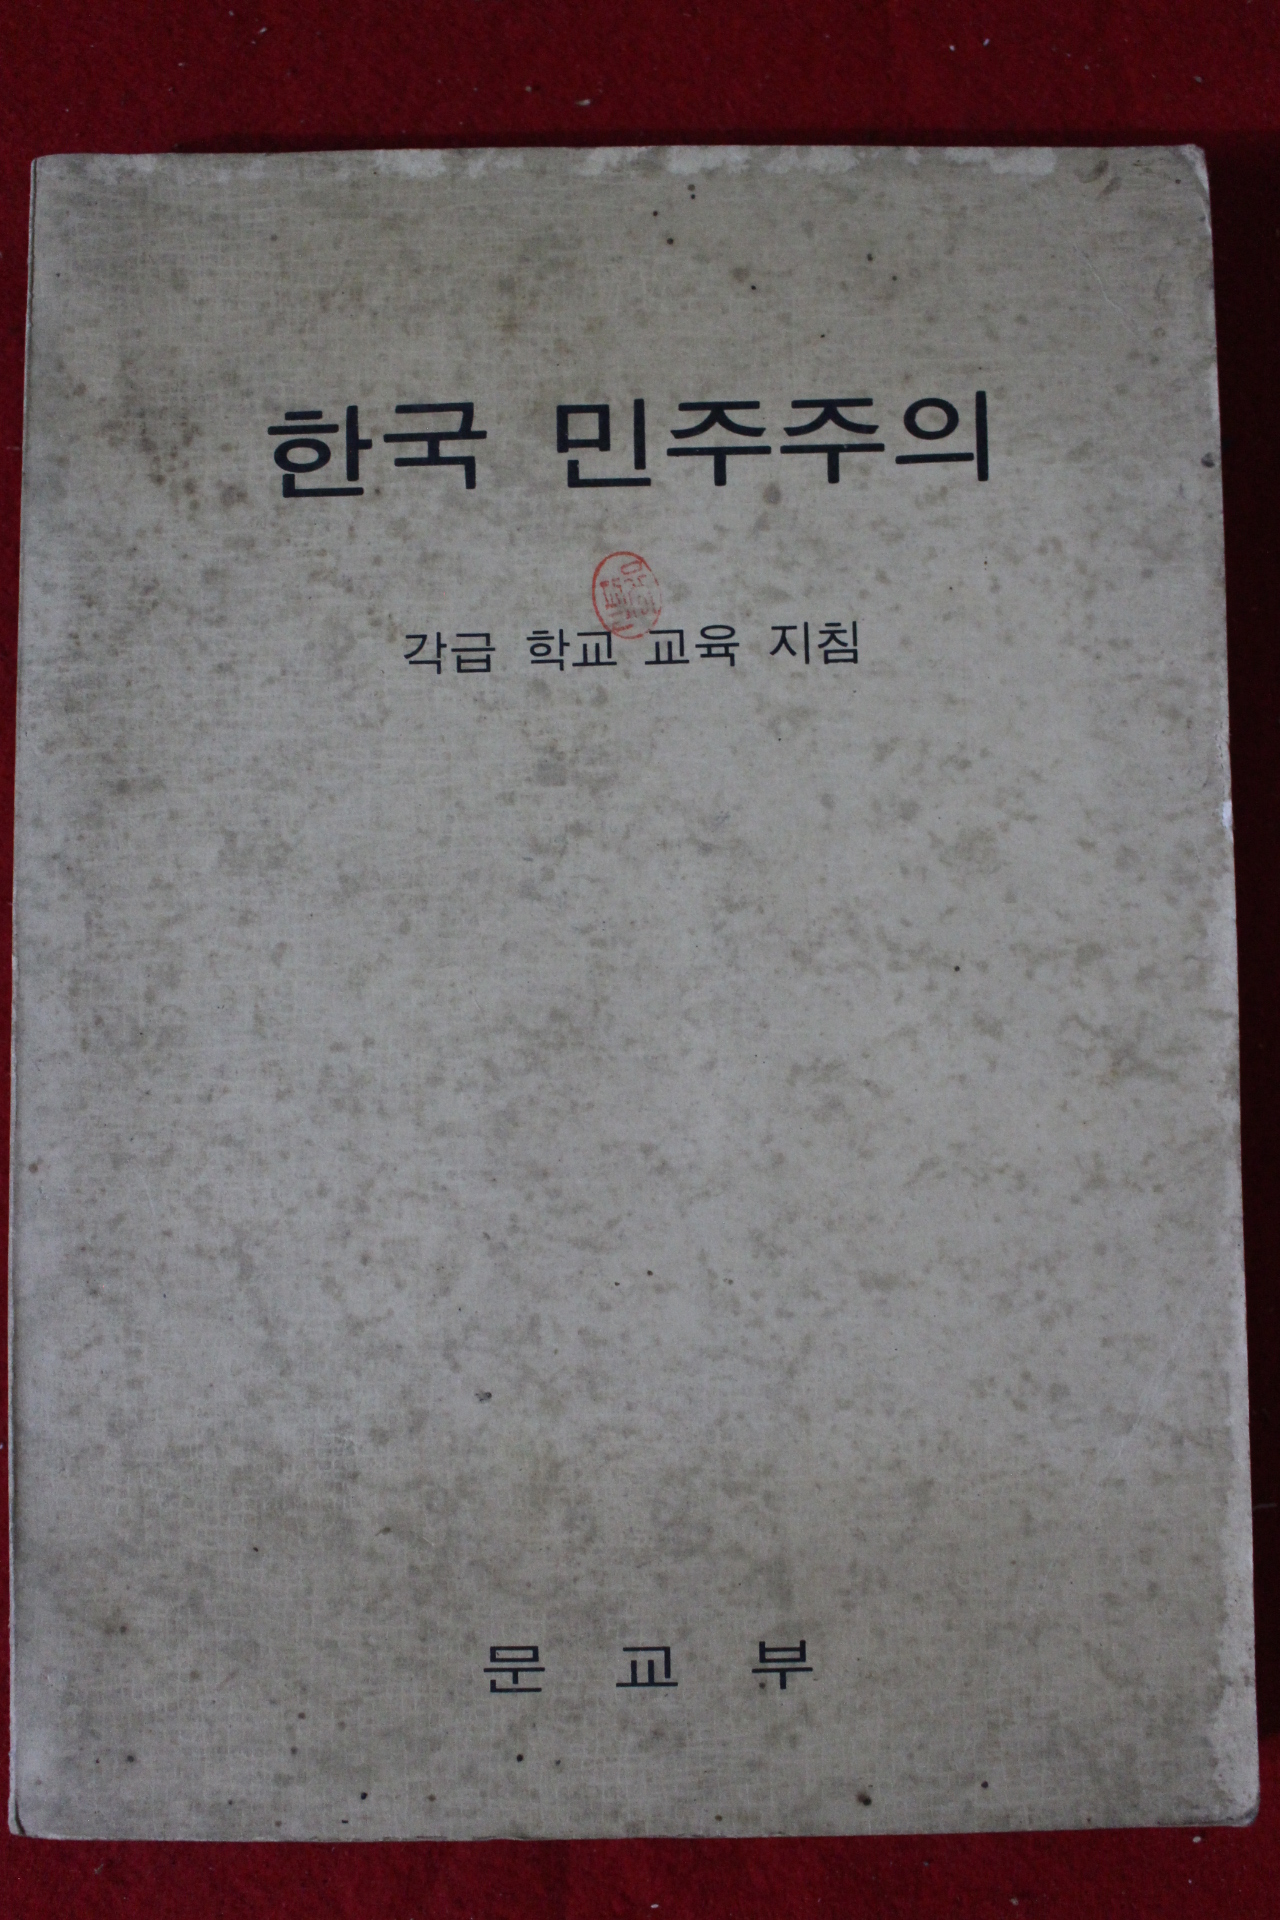 1972년 각급학교 교육지침 한국 민주주의